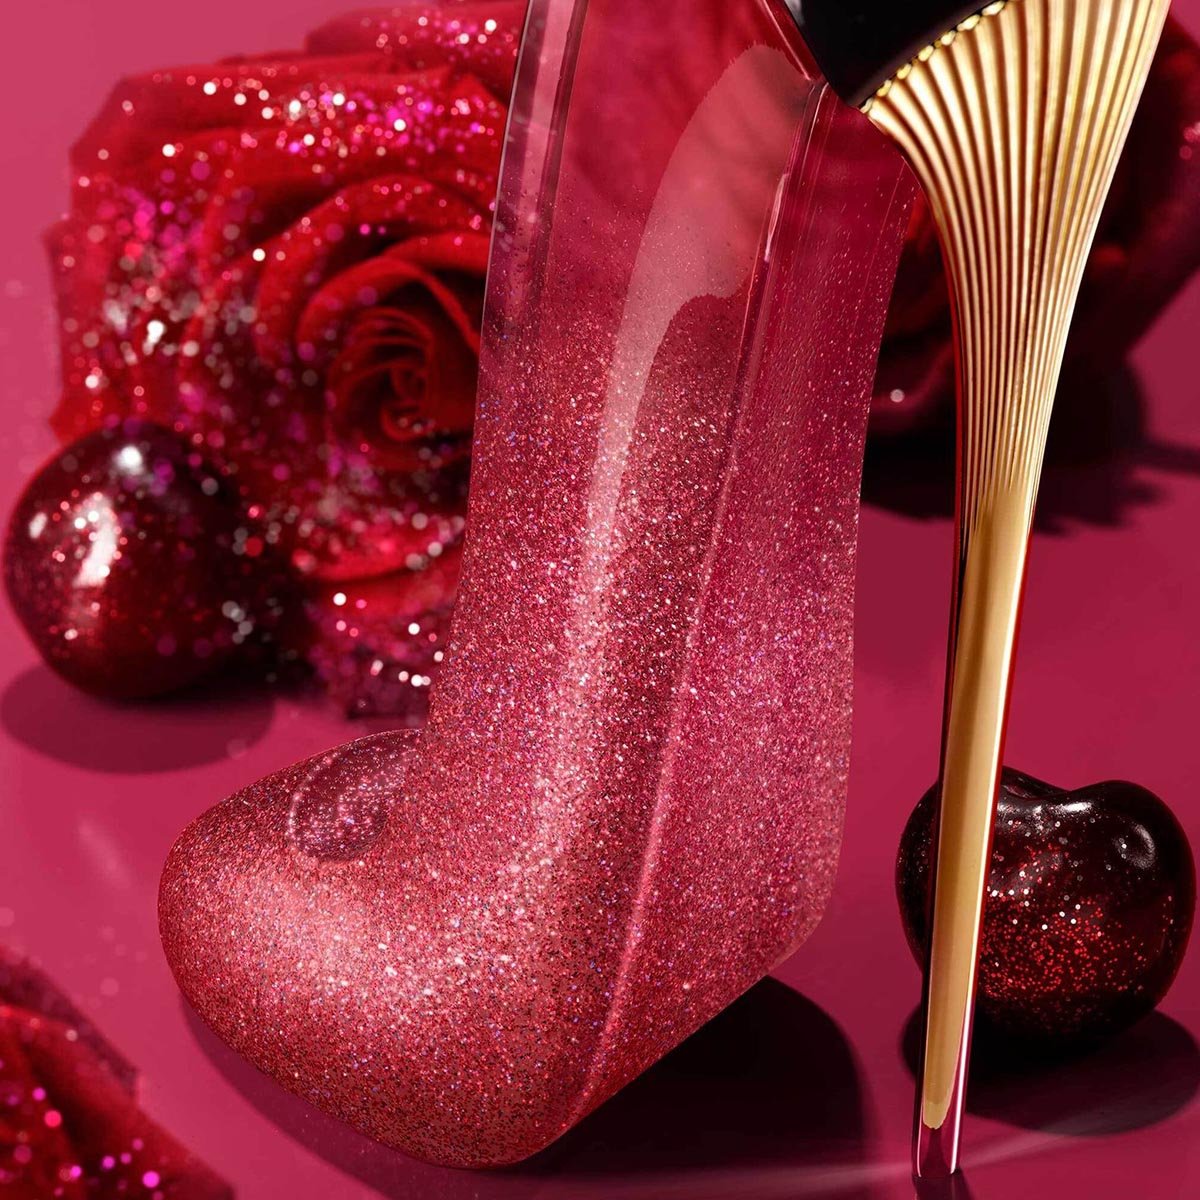 Carolina Herrera Very Good Girl Glam EDP | My Perfume Shop Australia